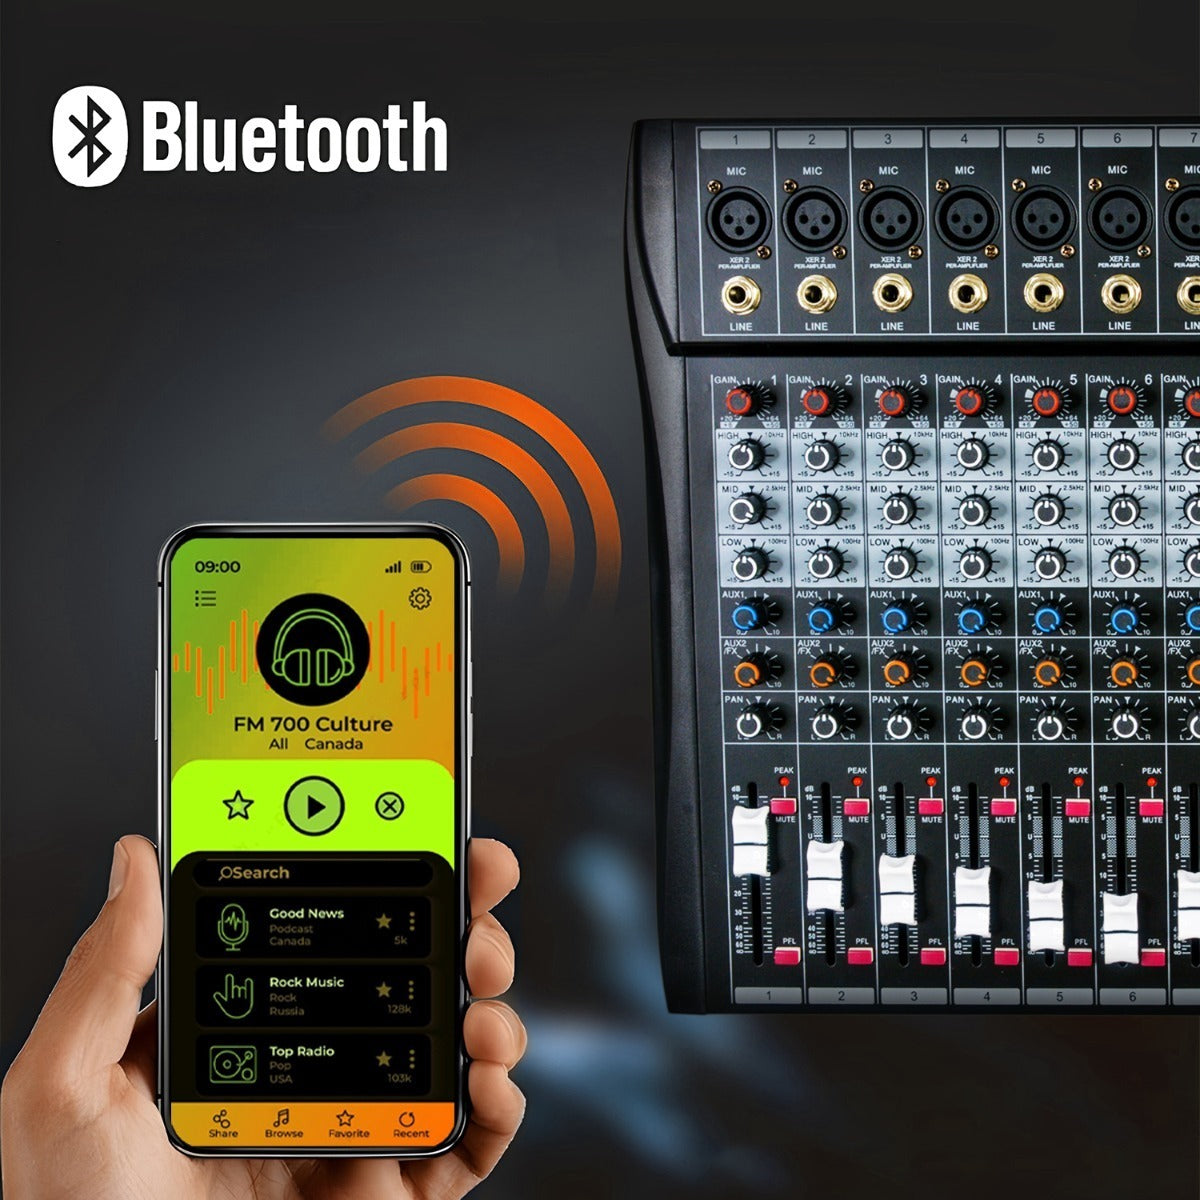 Consola Mezcladora 12 Canales Bluetooth Usb Estudio Sonido Audiotek  Mezcladora de 12 canales